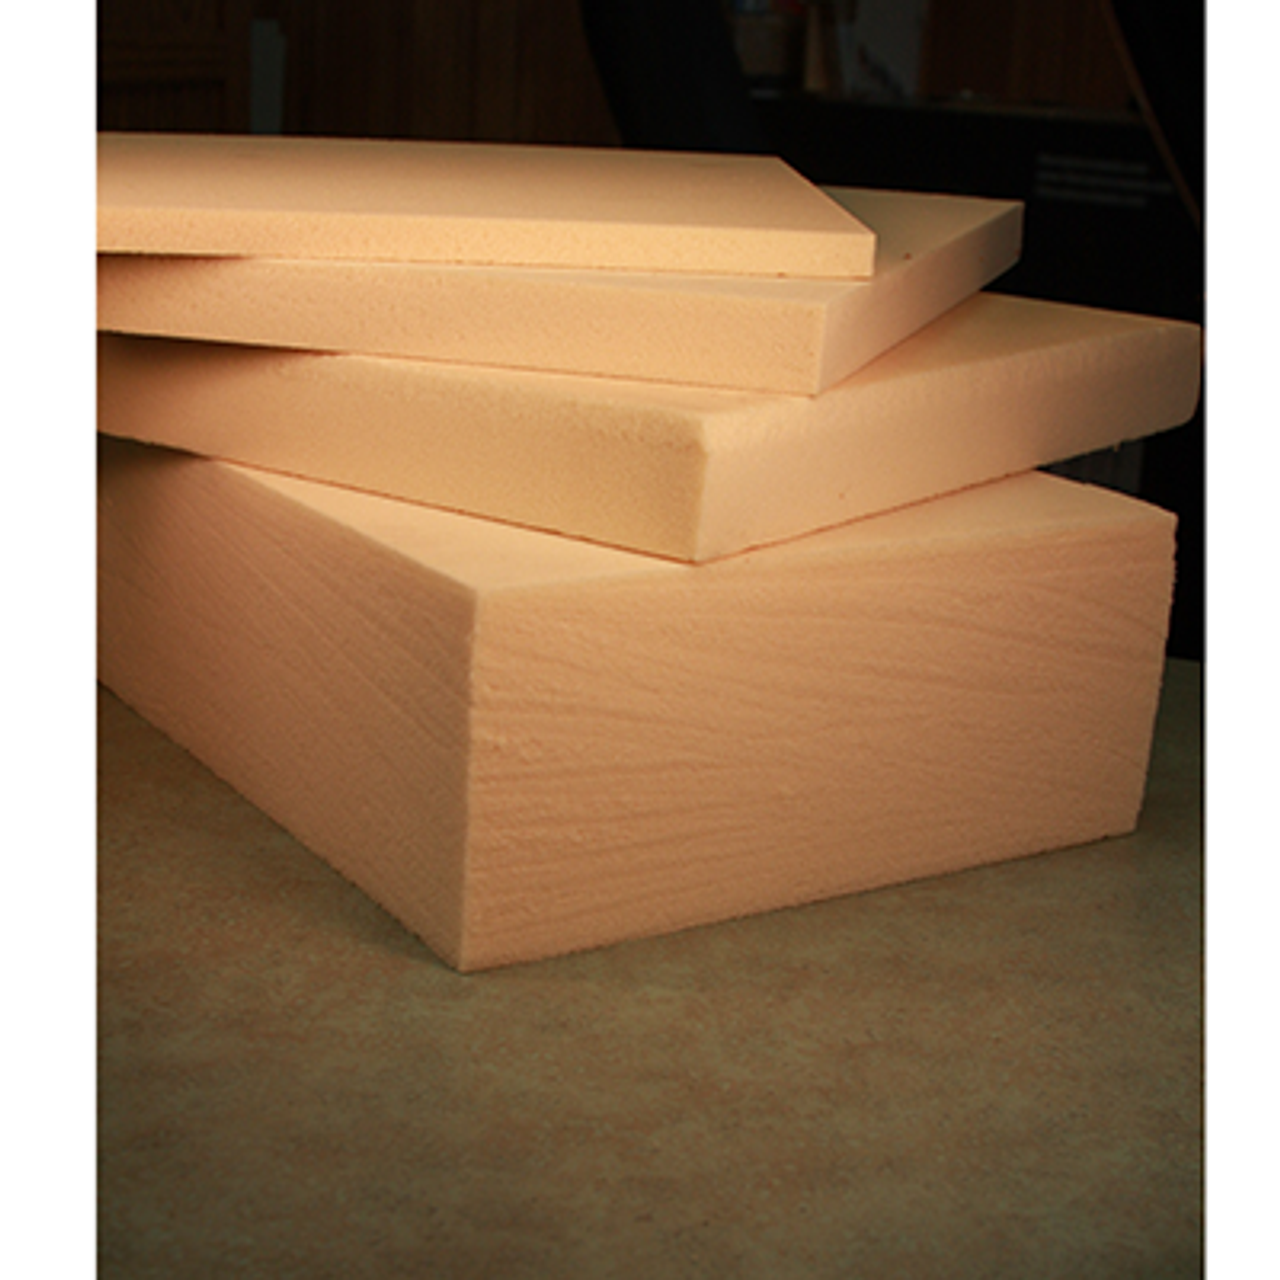 CNC and Modeling Foam (Rigid Polyurethane Foam) - High Density 8lb/ft3